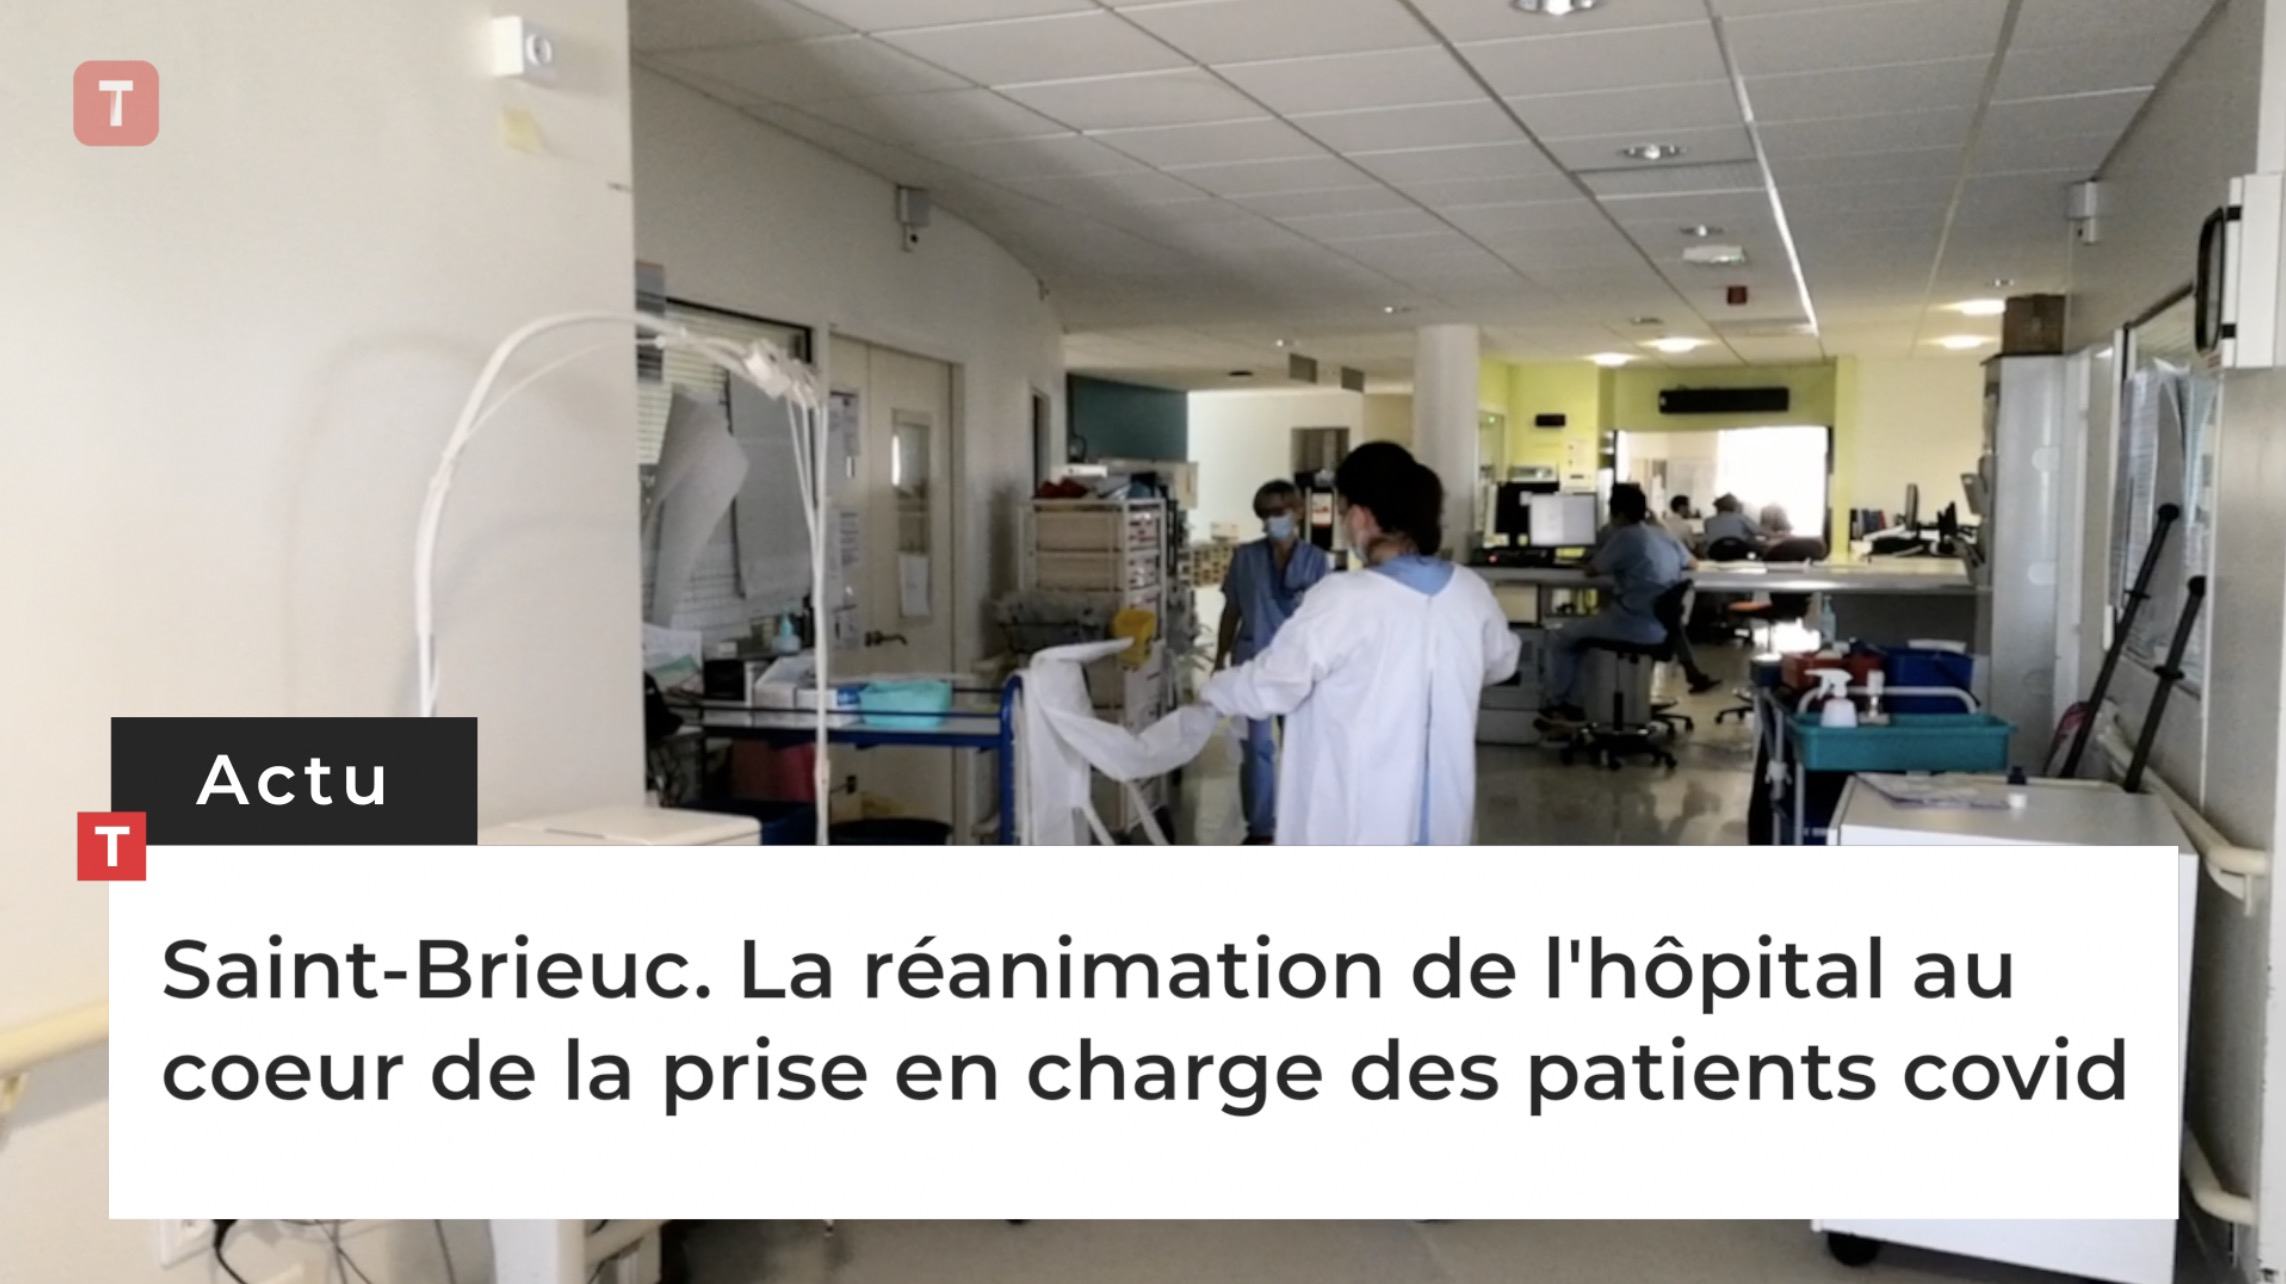 Saint-Brieuc. La réanimation de l'hôpital au coeur de la prise en charge des patients covid (Le Télégramme)